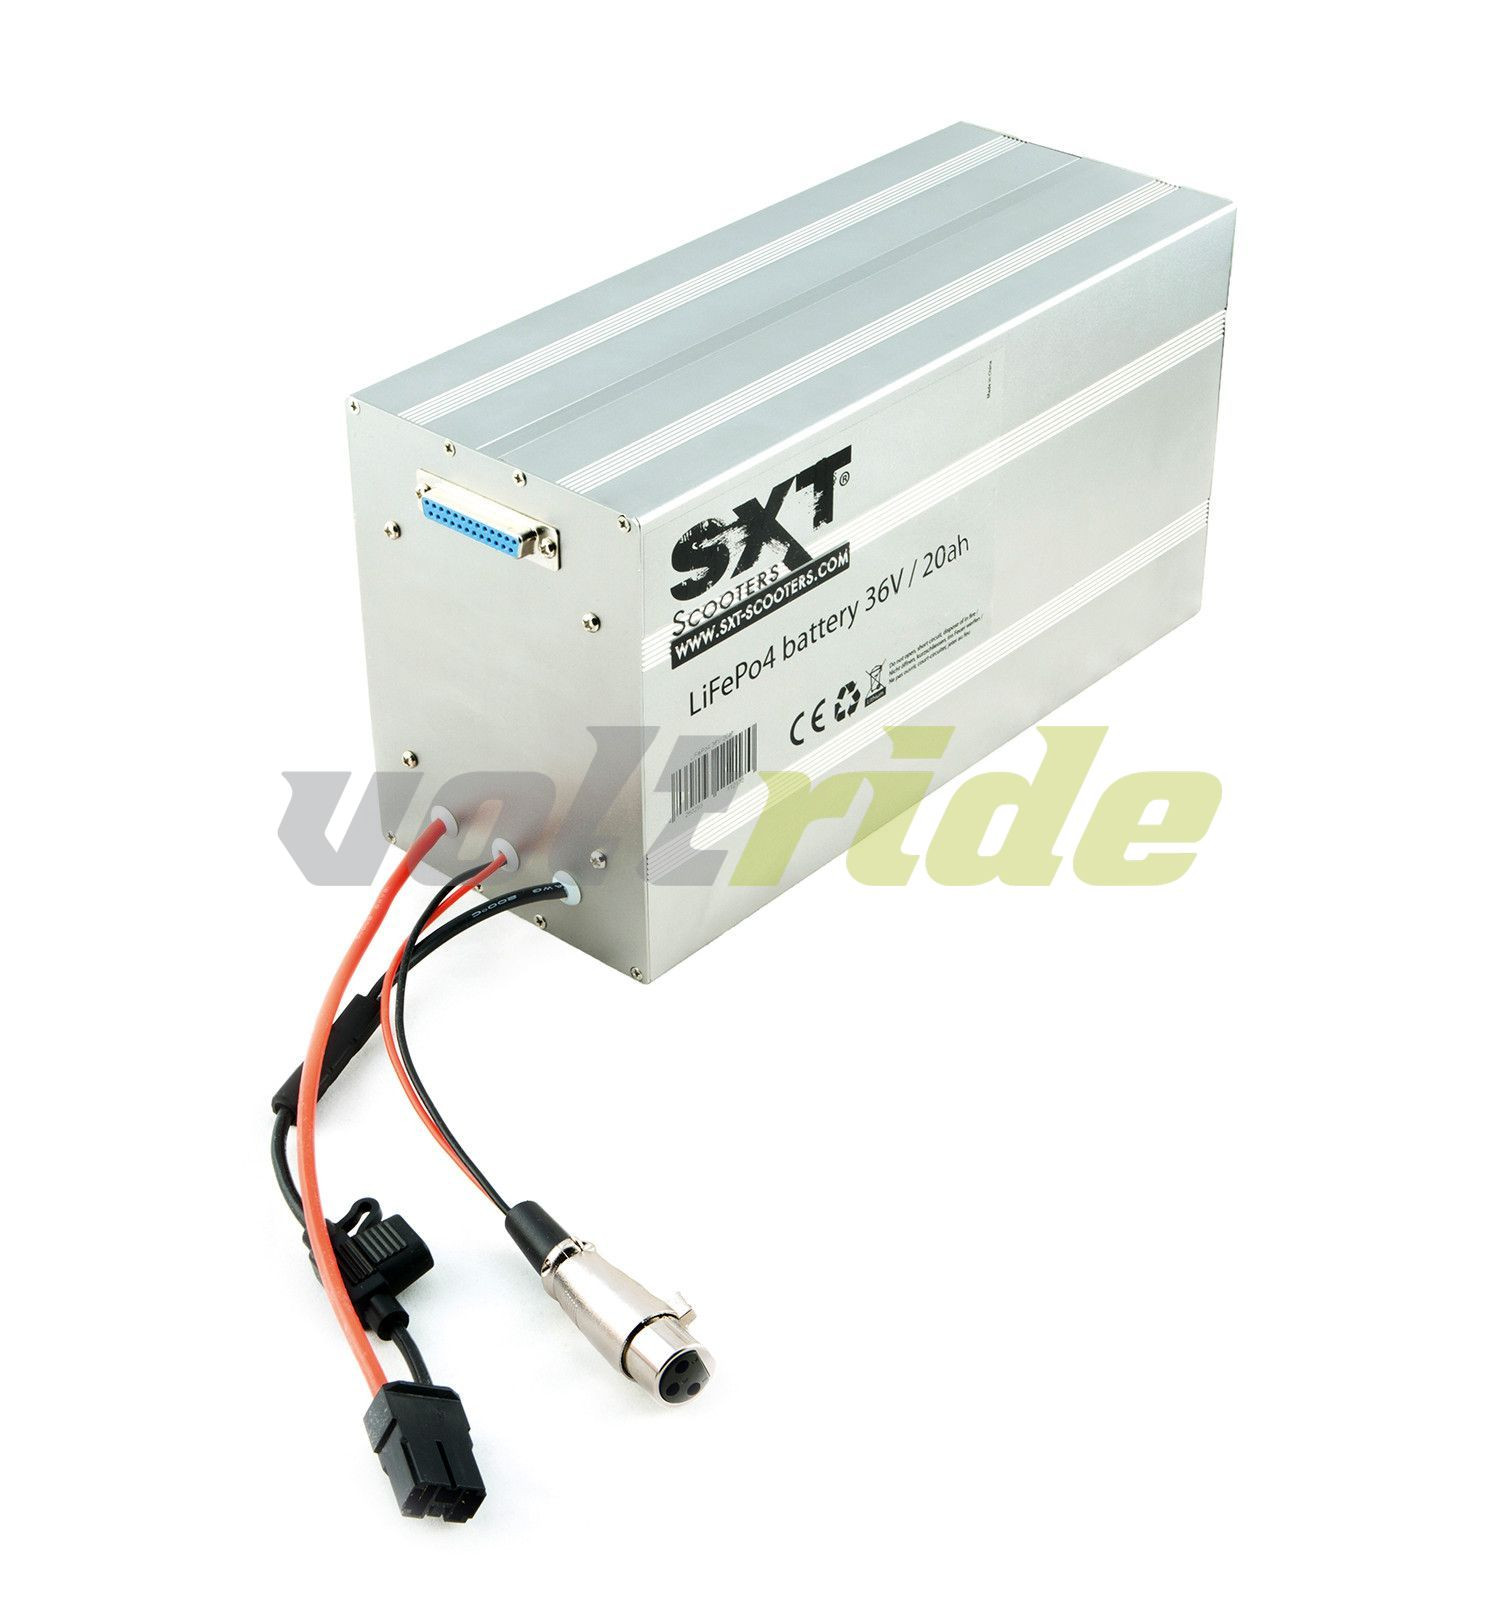 vraag naar longontsteking stapel SXT Battery 36V 20Ah LiFePo4 (Lithium) - Max Blinker - Enjoy the ride